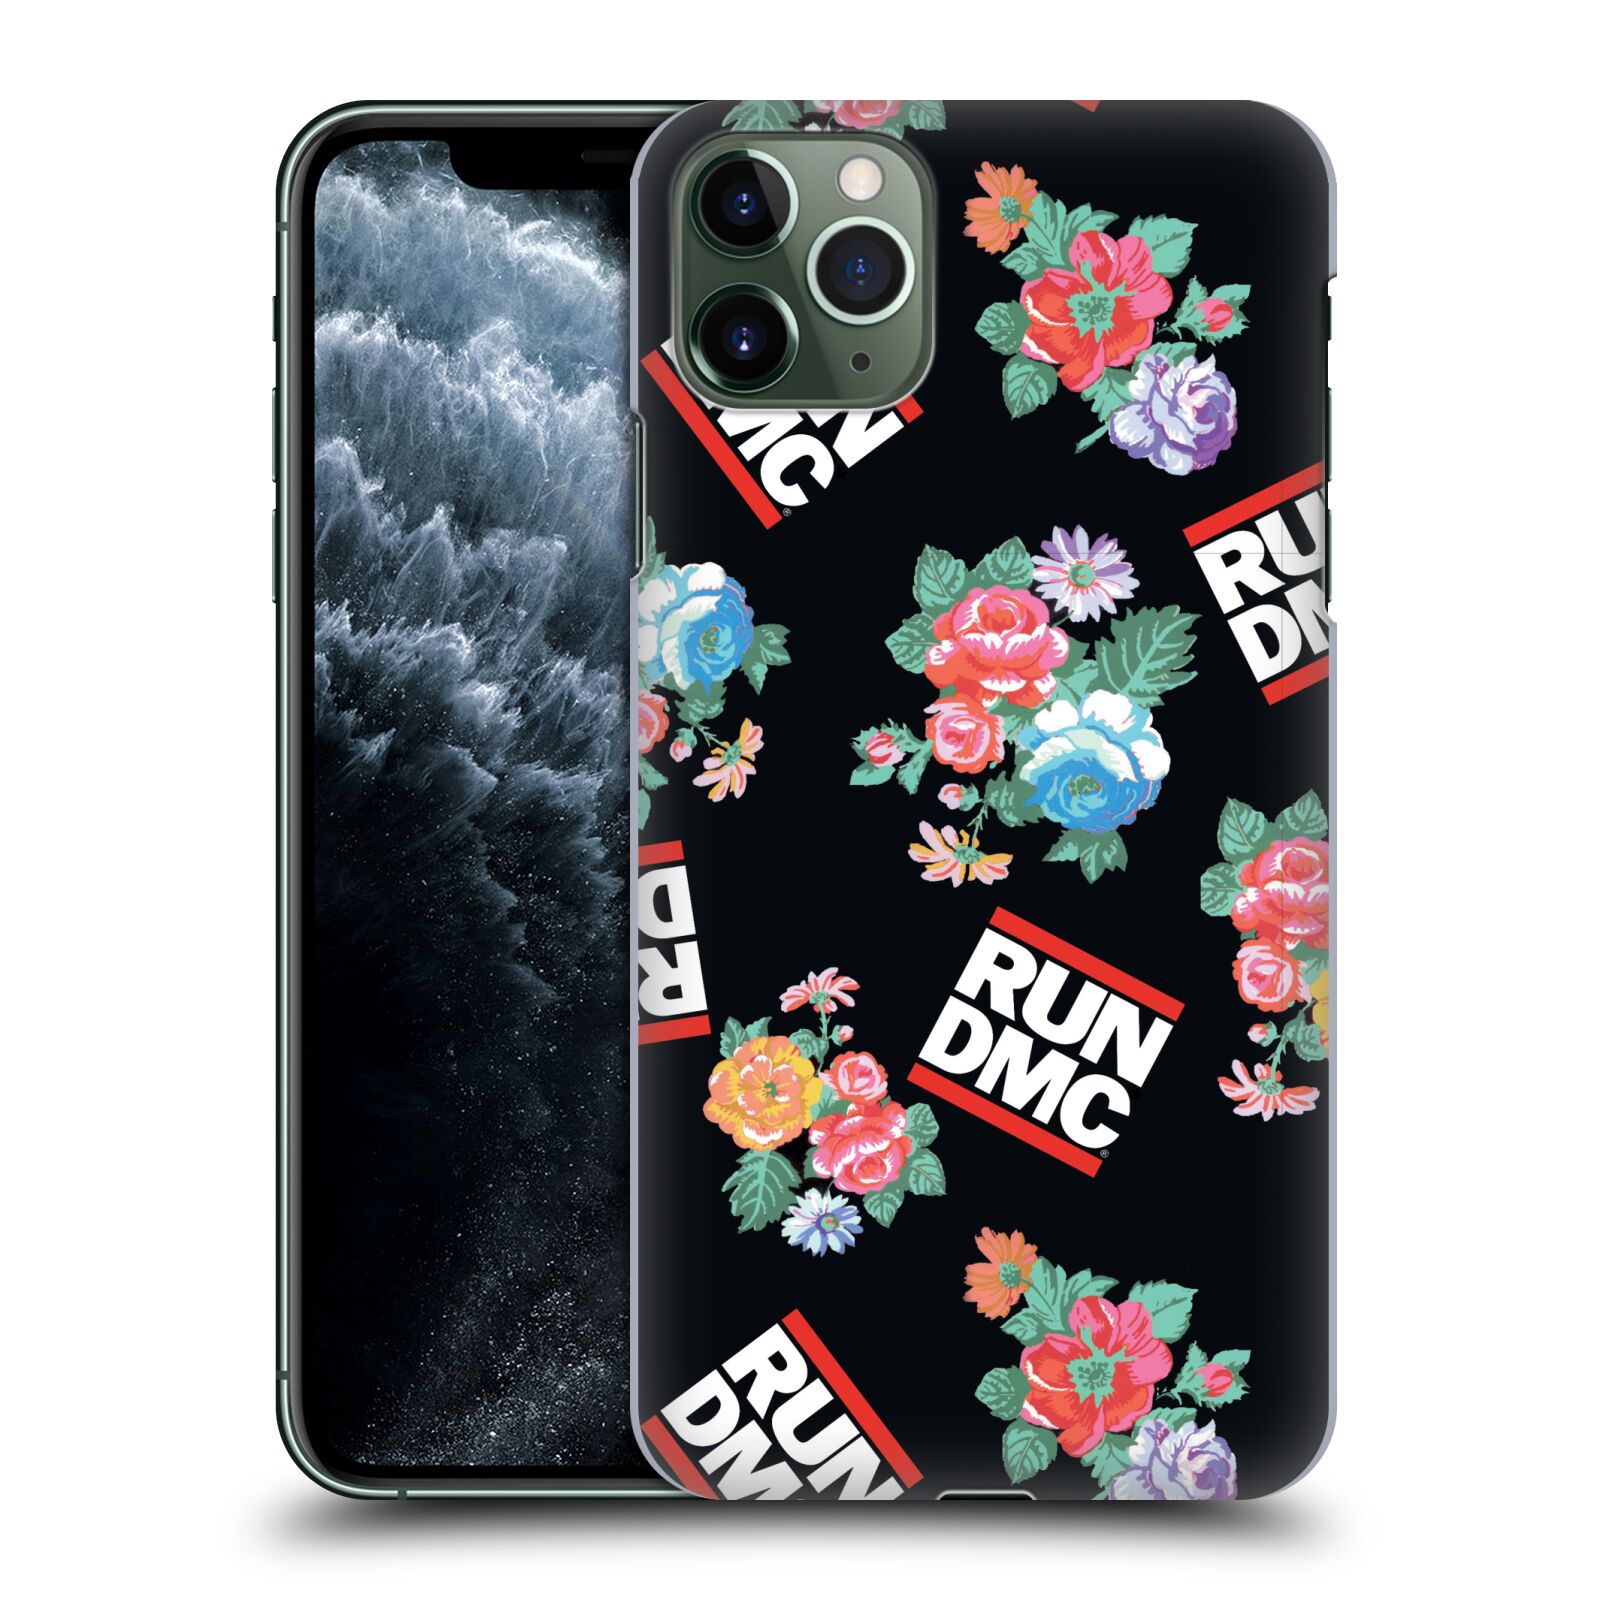 Pouzdro na mobil Apple Iphone 11 PRO MAX - HEAD CASE - rapová kapela Run DMC květiny černé pozadí